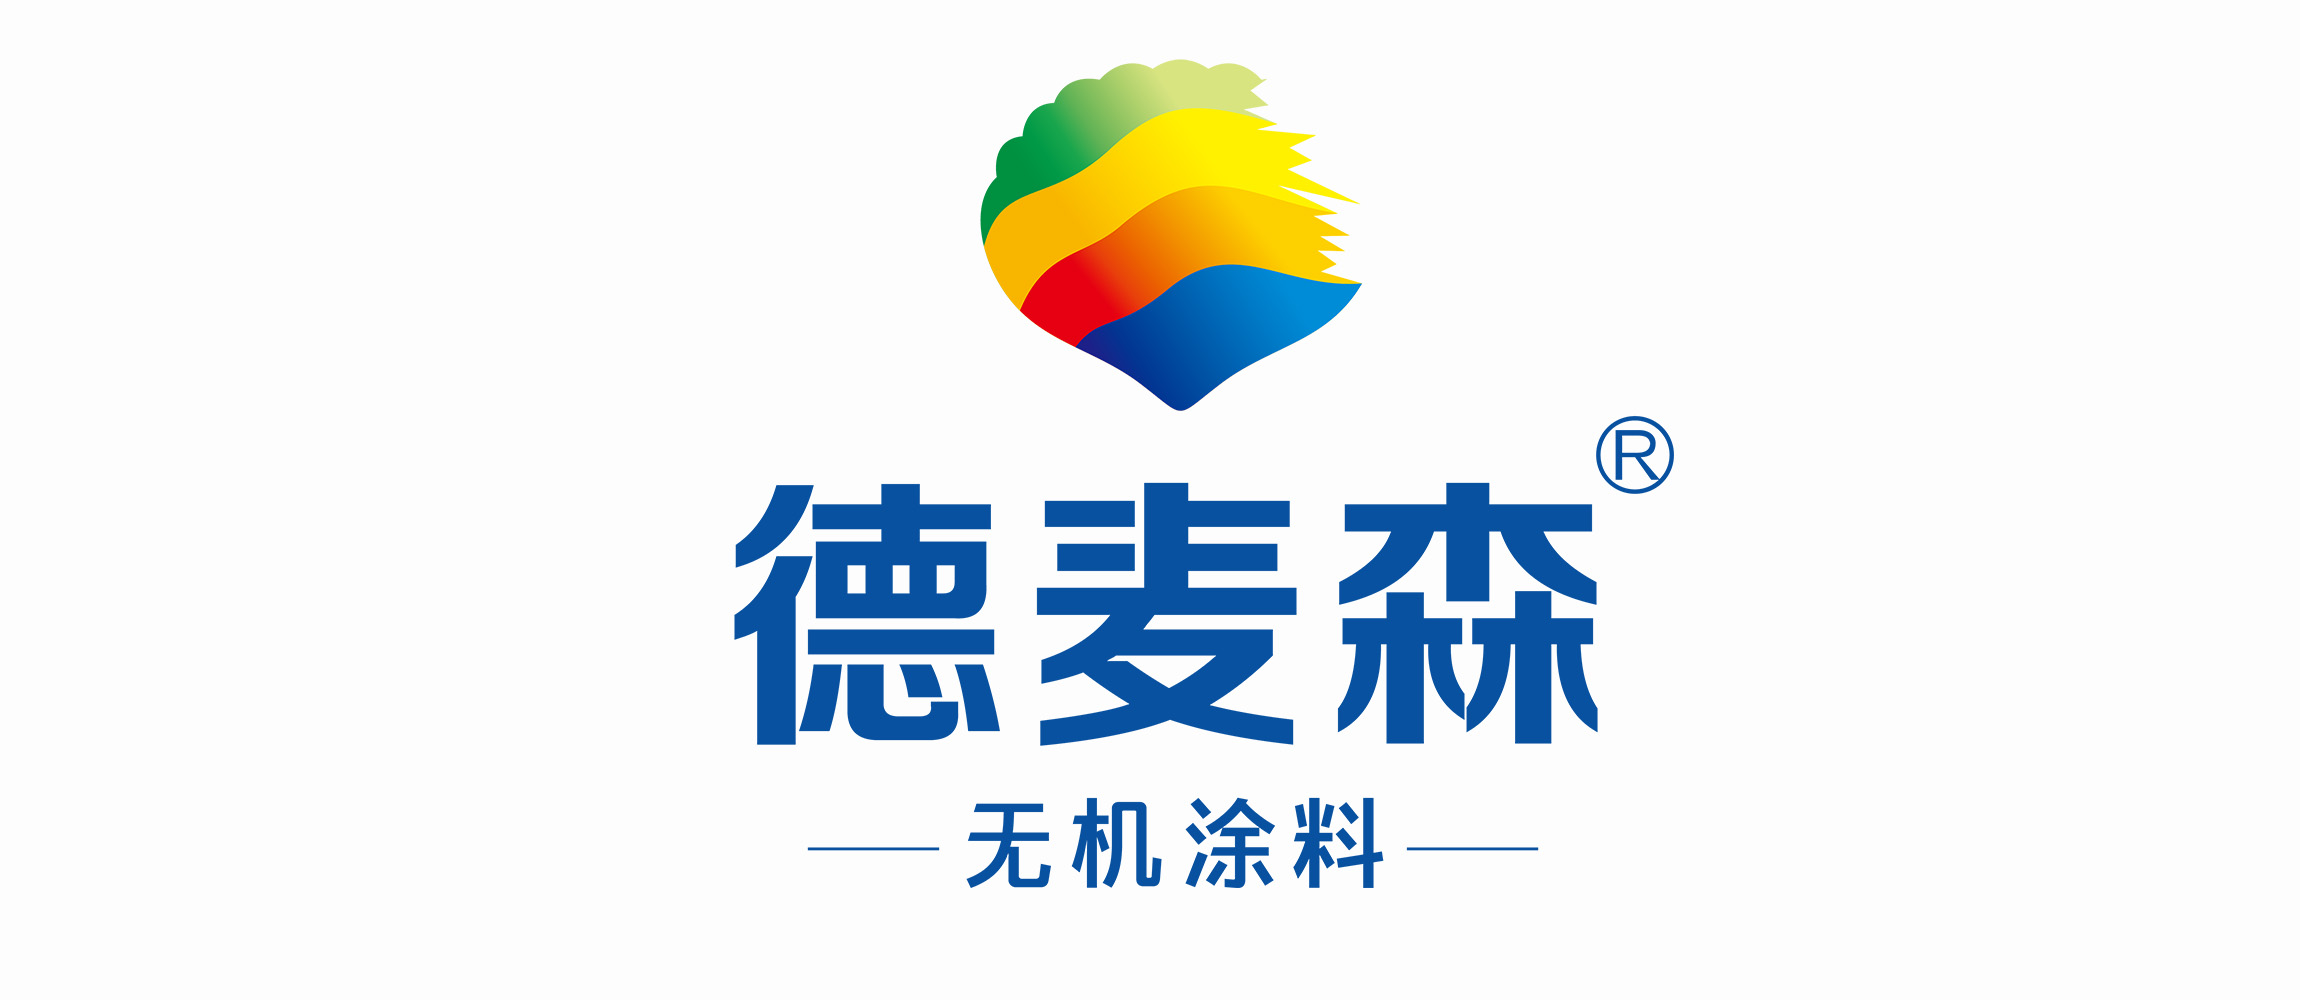 广州最氧环保科技股份有限公司